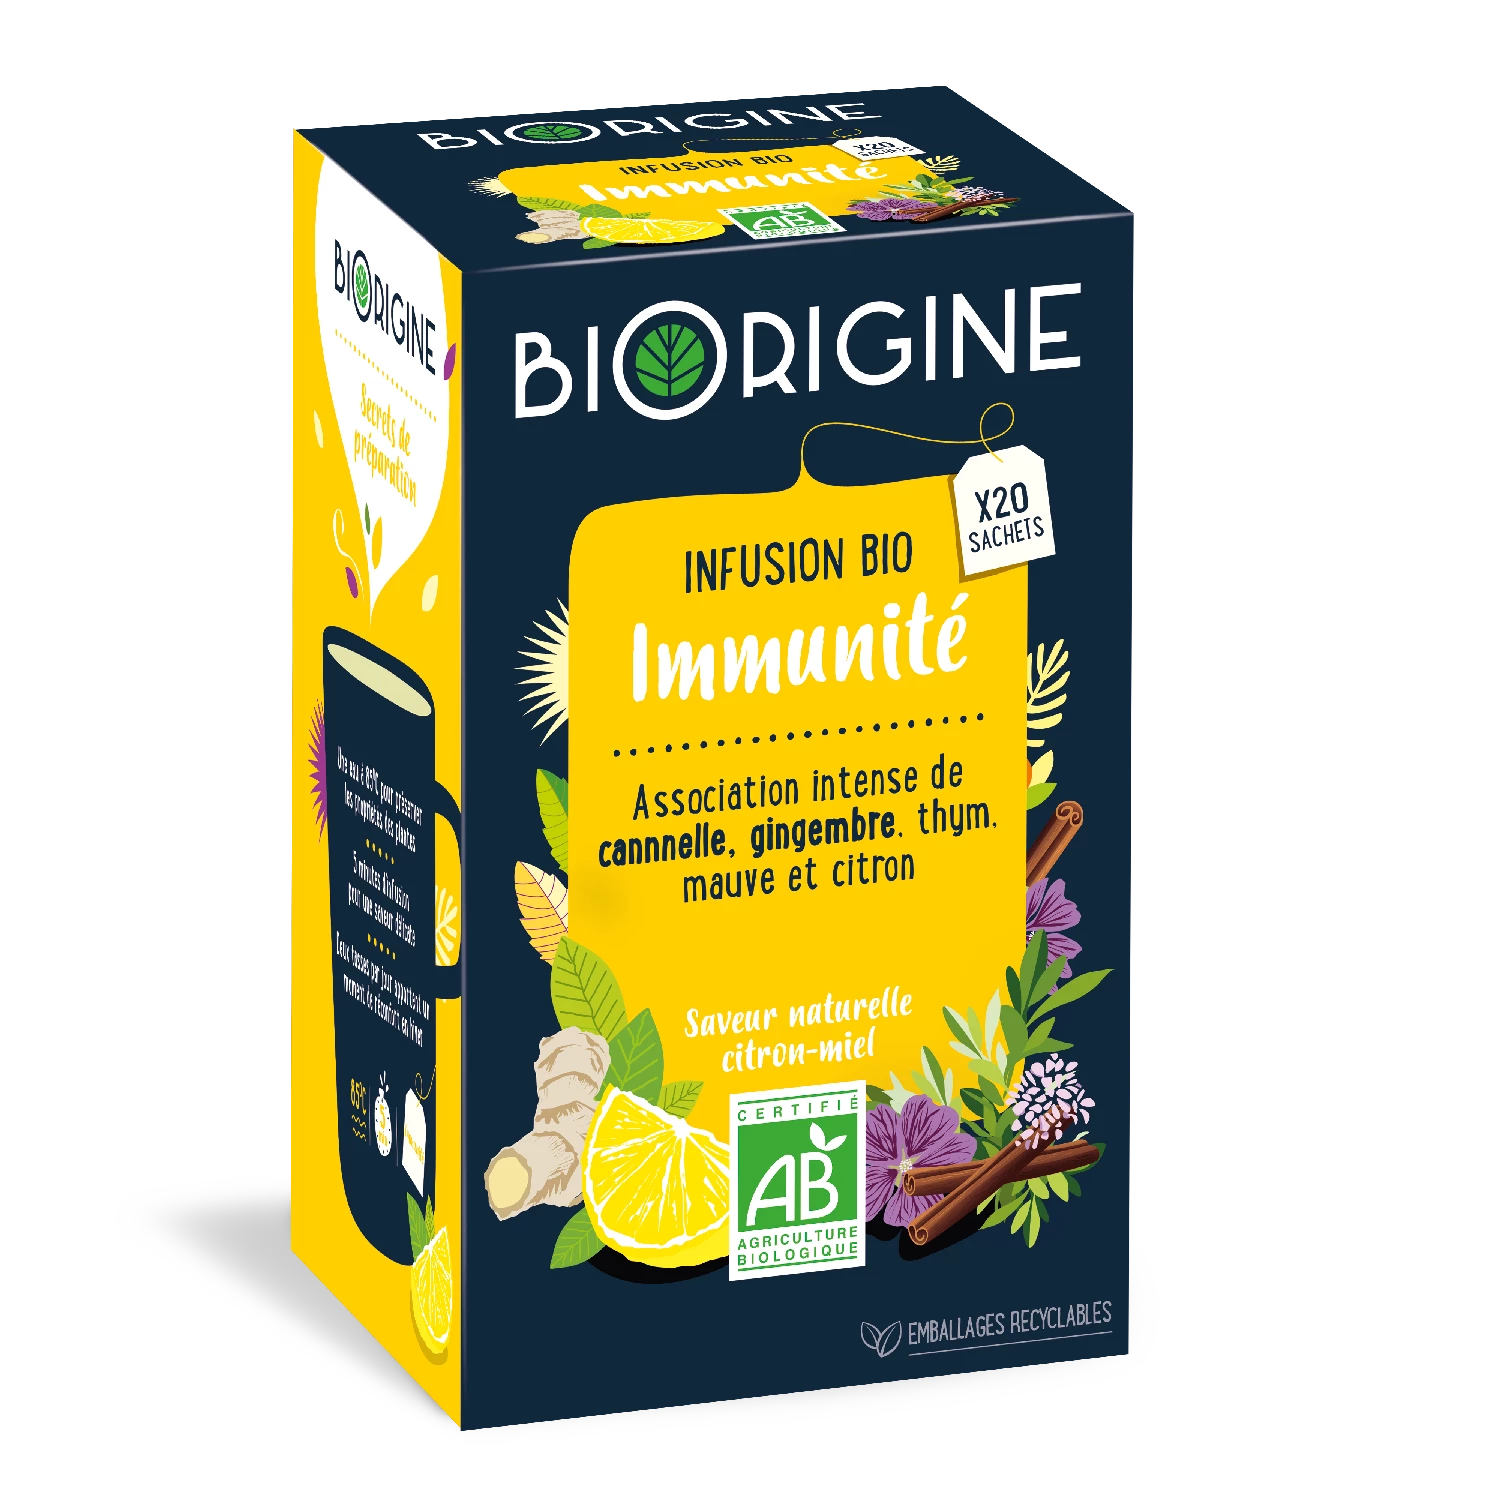 Biorgine Inf Immunite 45g